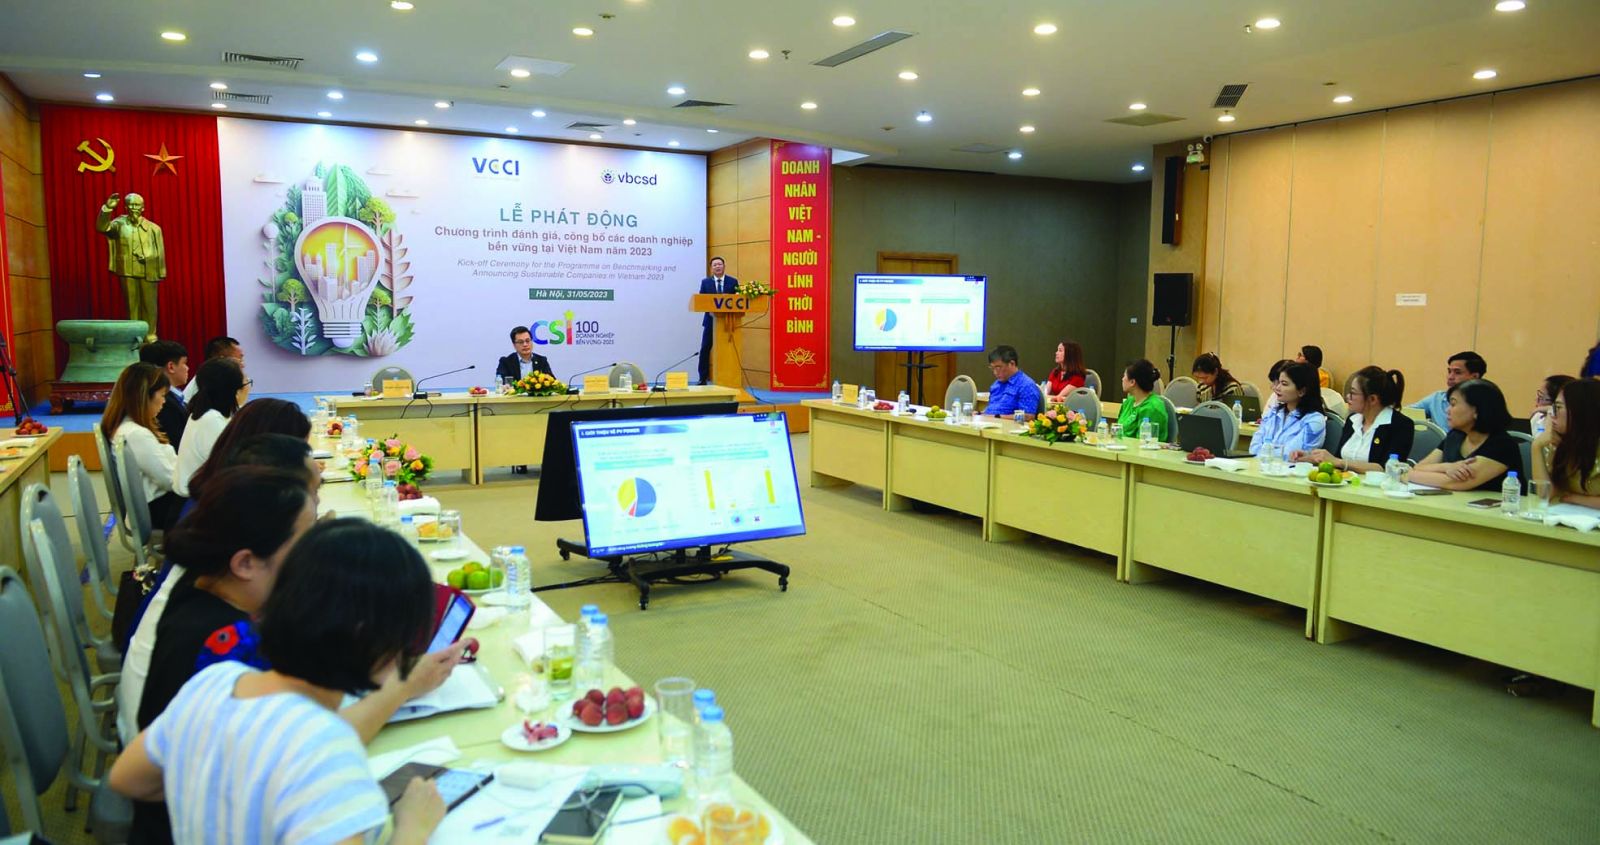  Lễ phát động Chương trình đánh giá, công bố doanh nghiệp bền vững tại Việt Nam năm 2023 (CSI 2023)